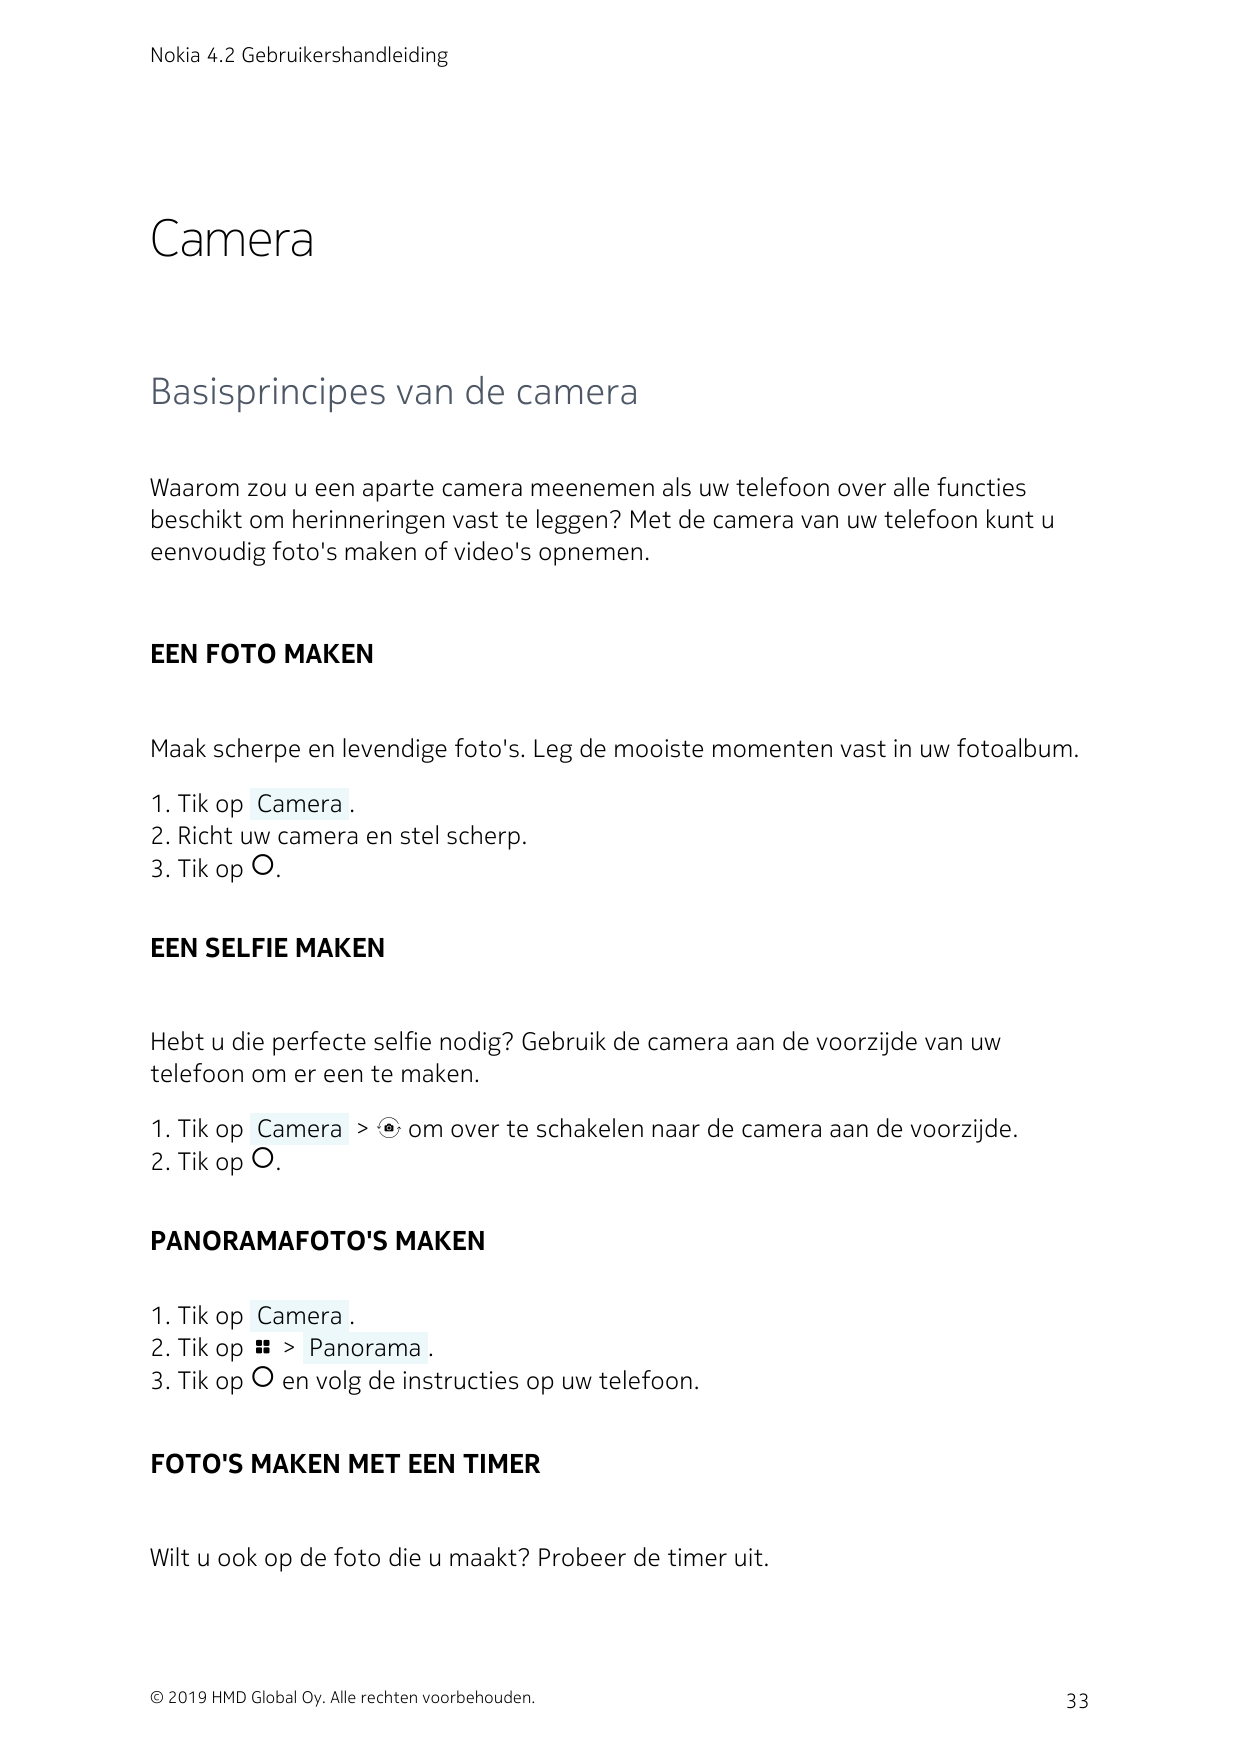 Nokia 4.2 GebruikershandleidingCameraBasisprincipes van de cameraWaarom zou u een aparte camera meenemen als uw telefoon over al